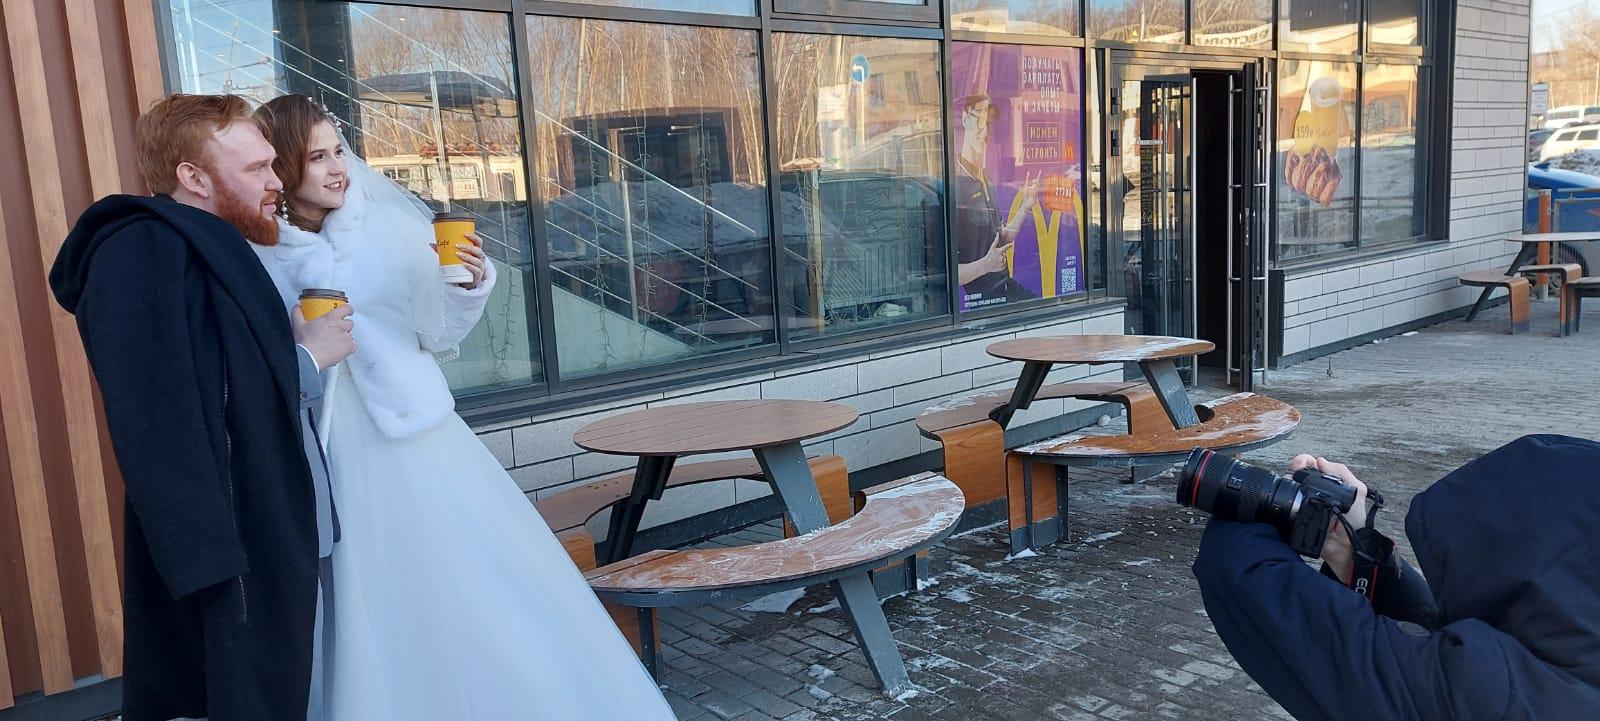 Фото Блокировка Instagram, командировка депутатов Новосибирска в ЛДНР и свадьба в McDonald’s – итоги выходных на Сиб.фм 4